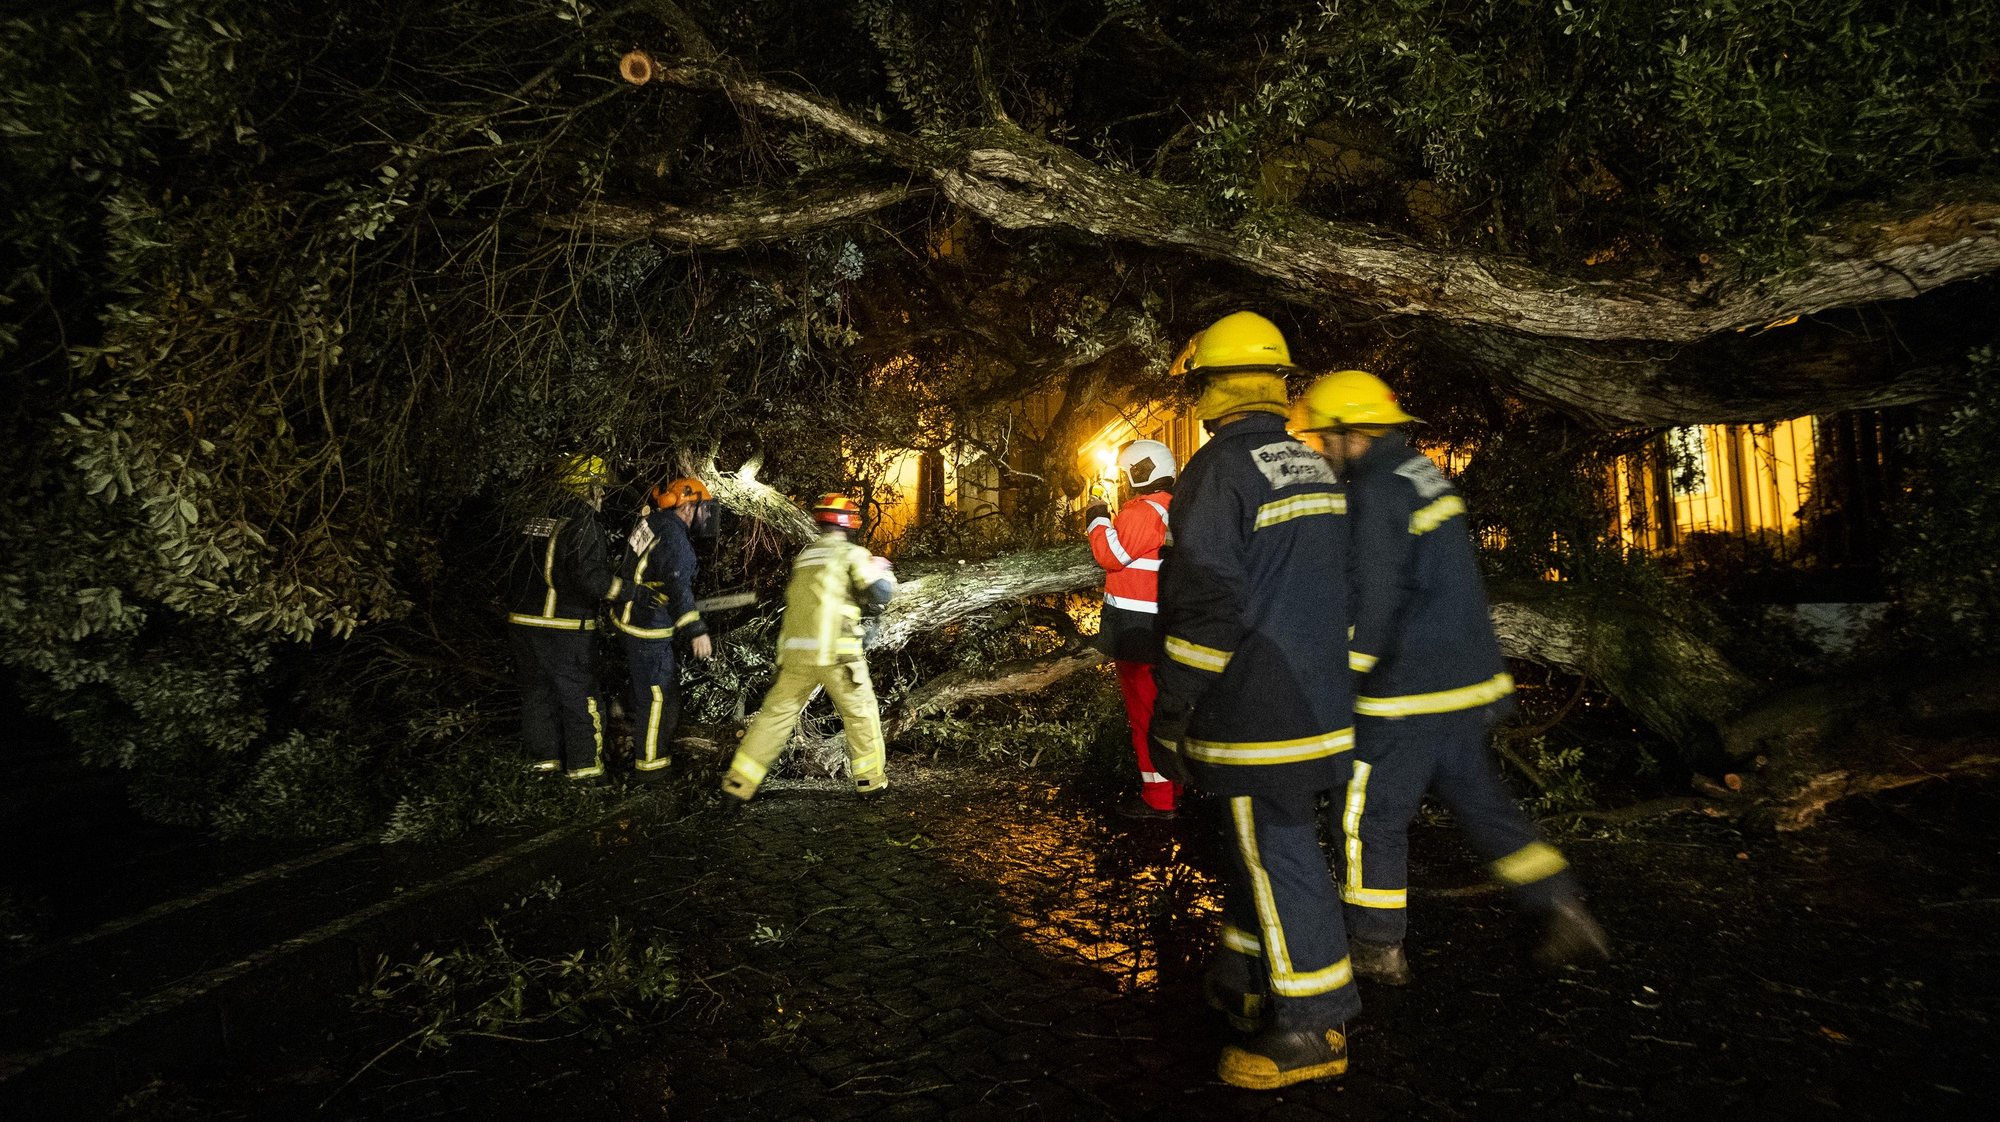 Elementos dos bombeiros e da proteção civil junto à árvore de grande porte após a queda na Rua do Marquês, devido ao mau tempo em Angra do Heroísmo, na Ilha Terceira, Açores, 27 de janeiro de 2020. ANTÓNIO ARAÚJO/LUSA